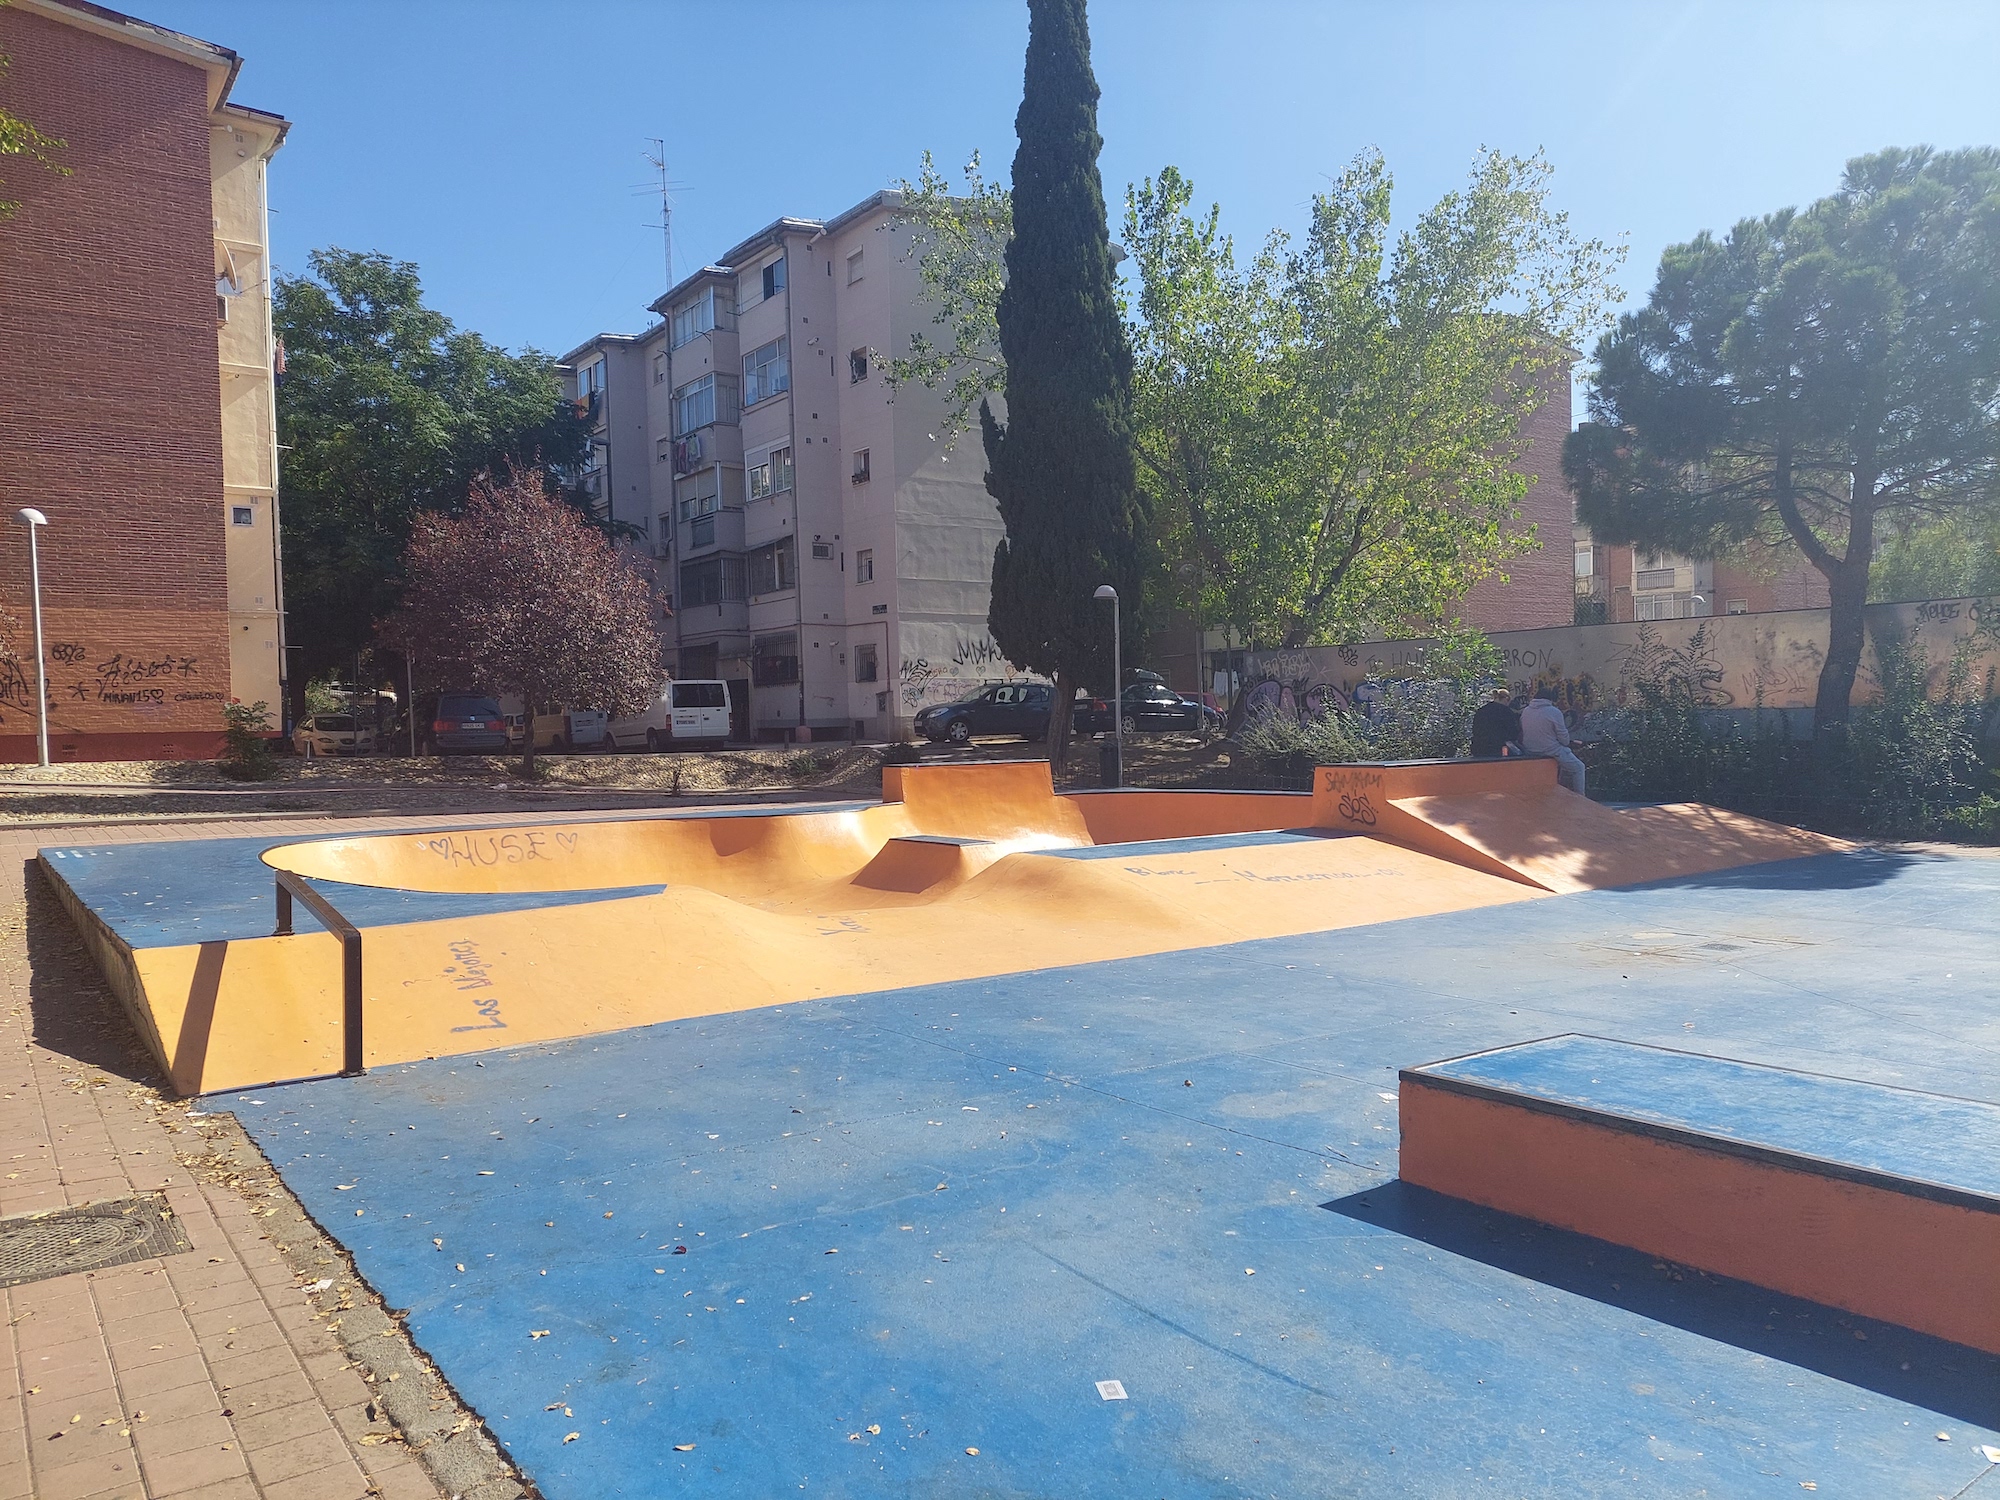 San Cristobal skatepark